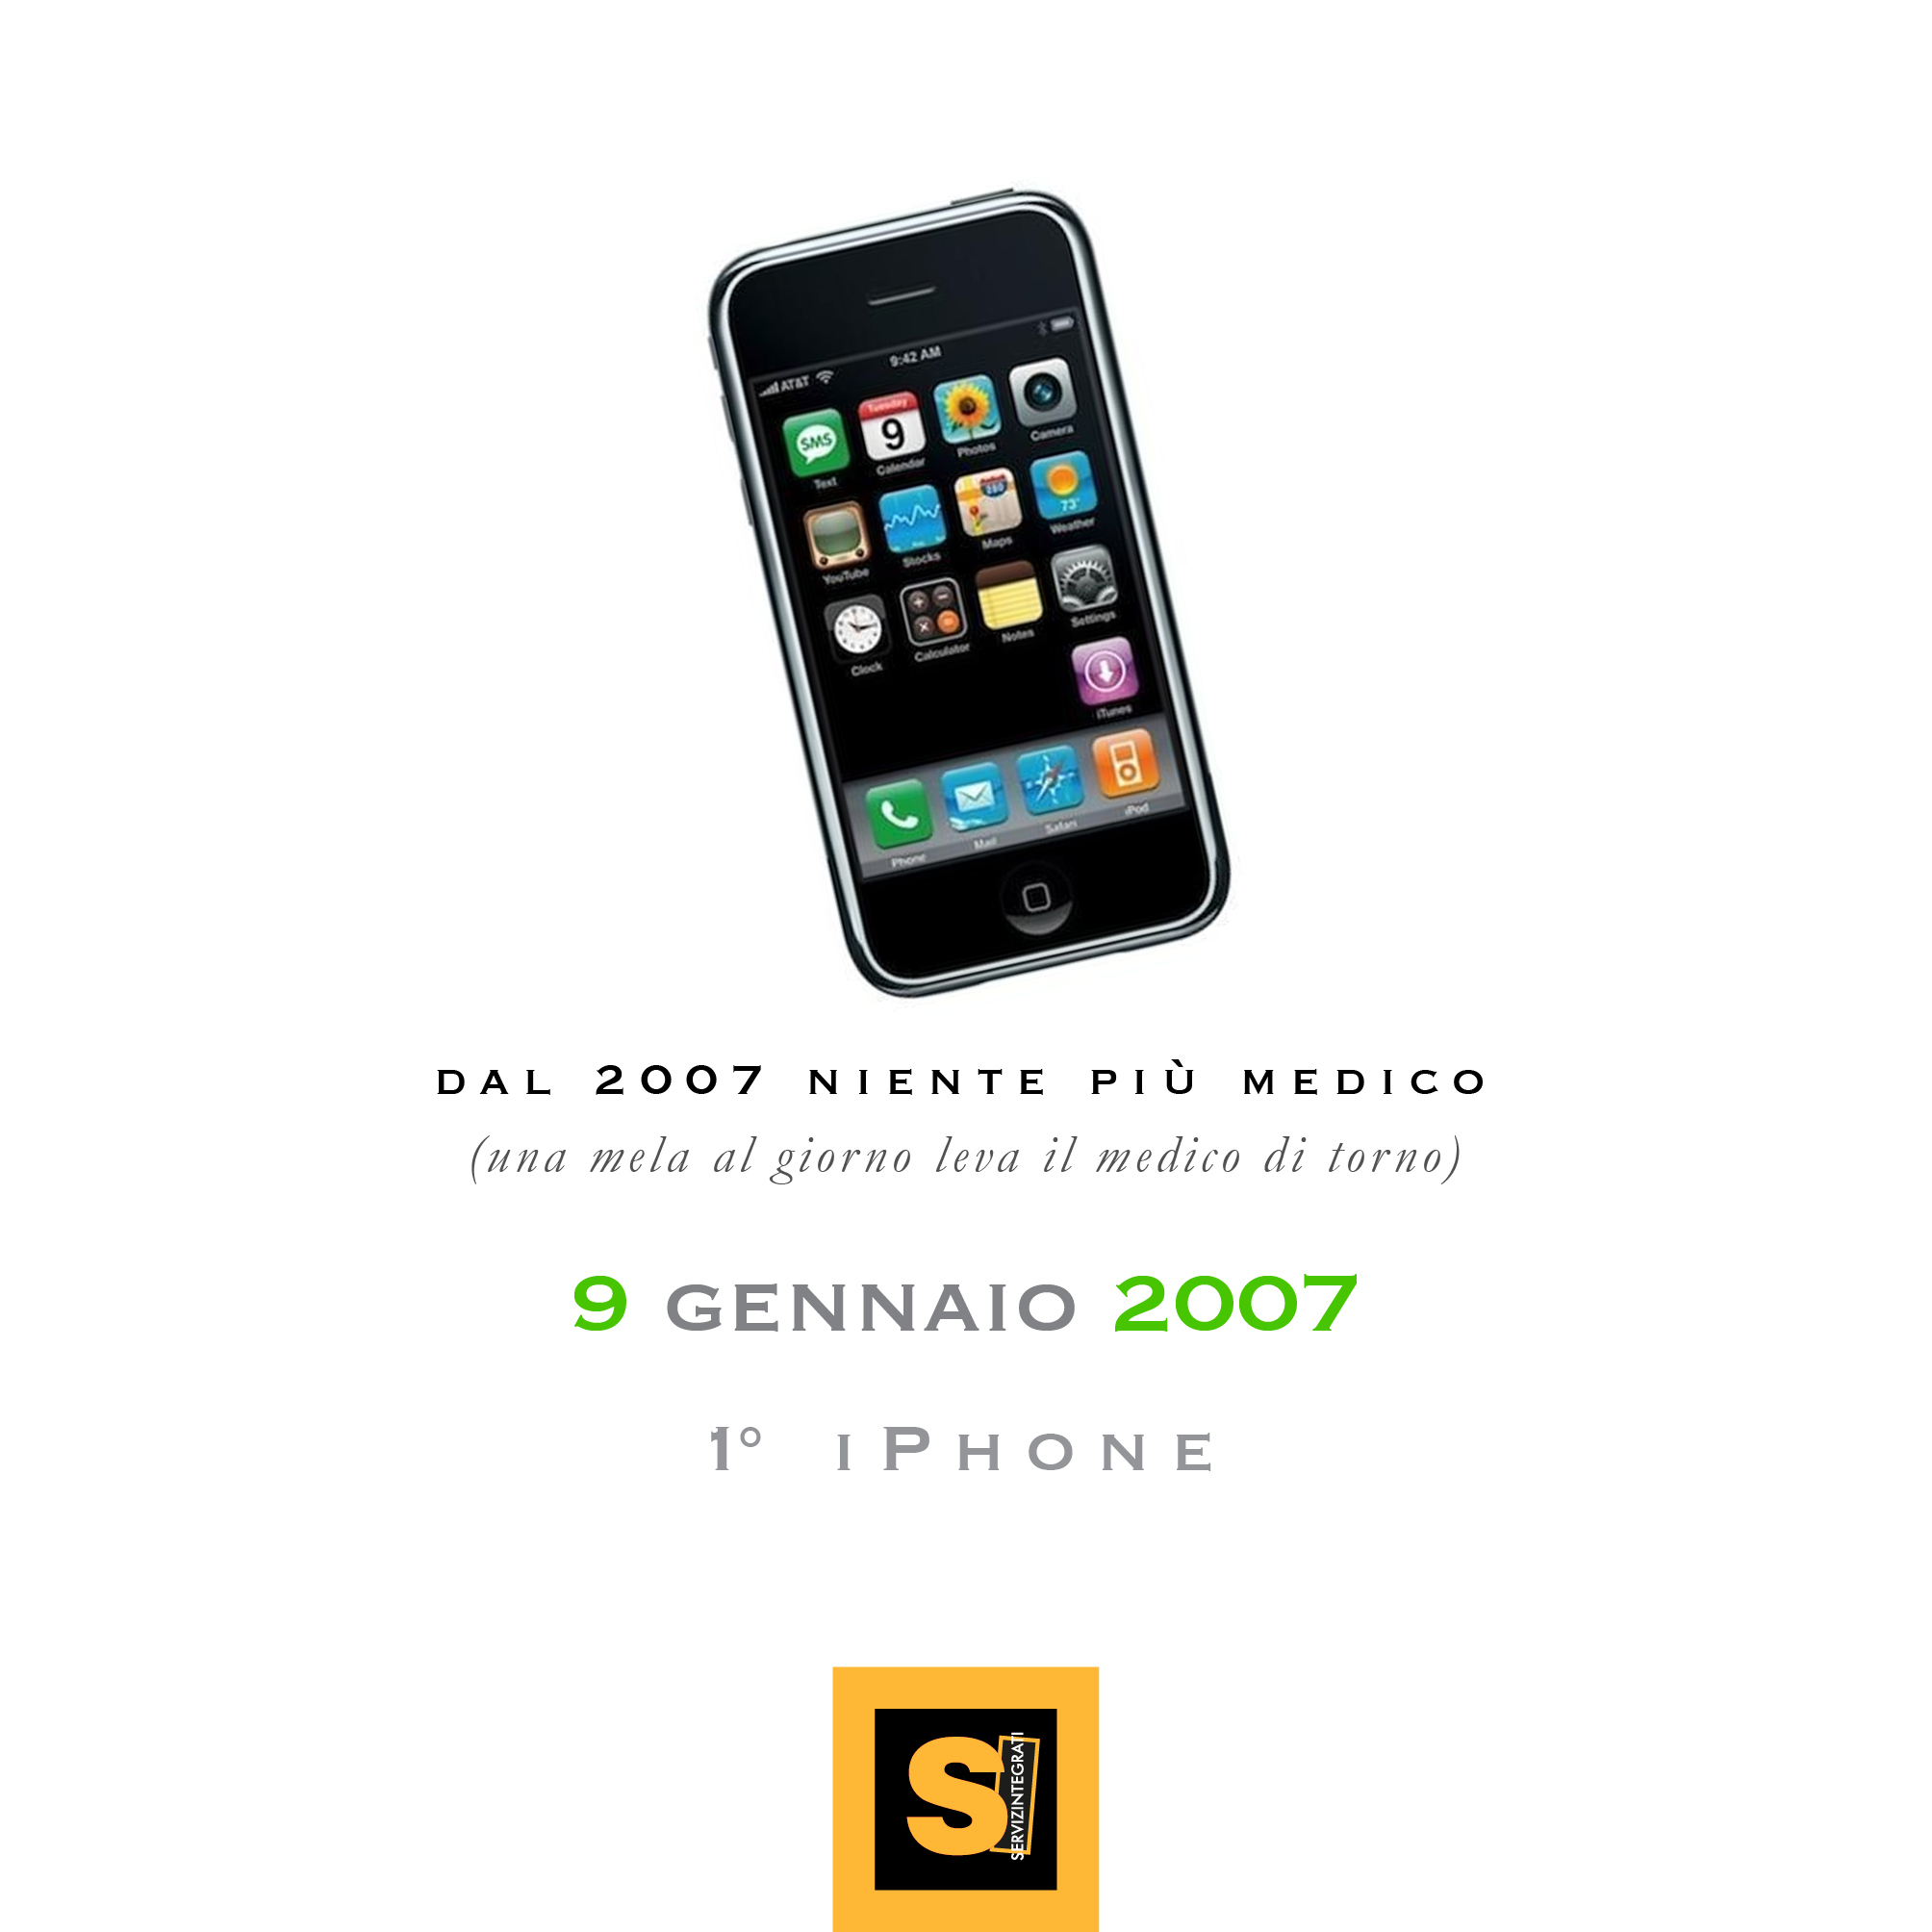 9 gennaio 2007: l'iPhone